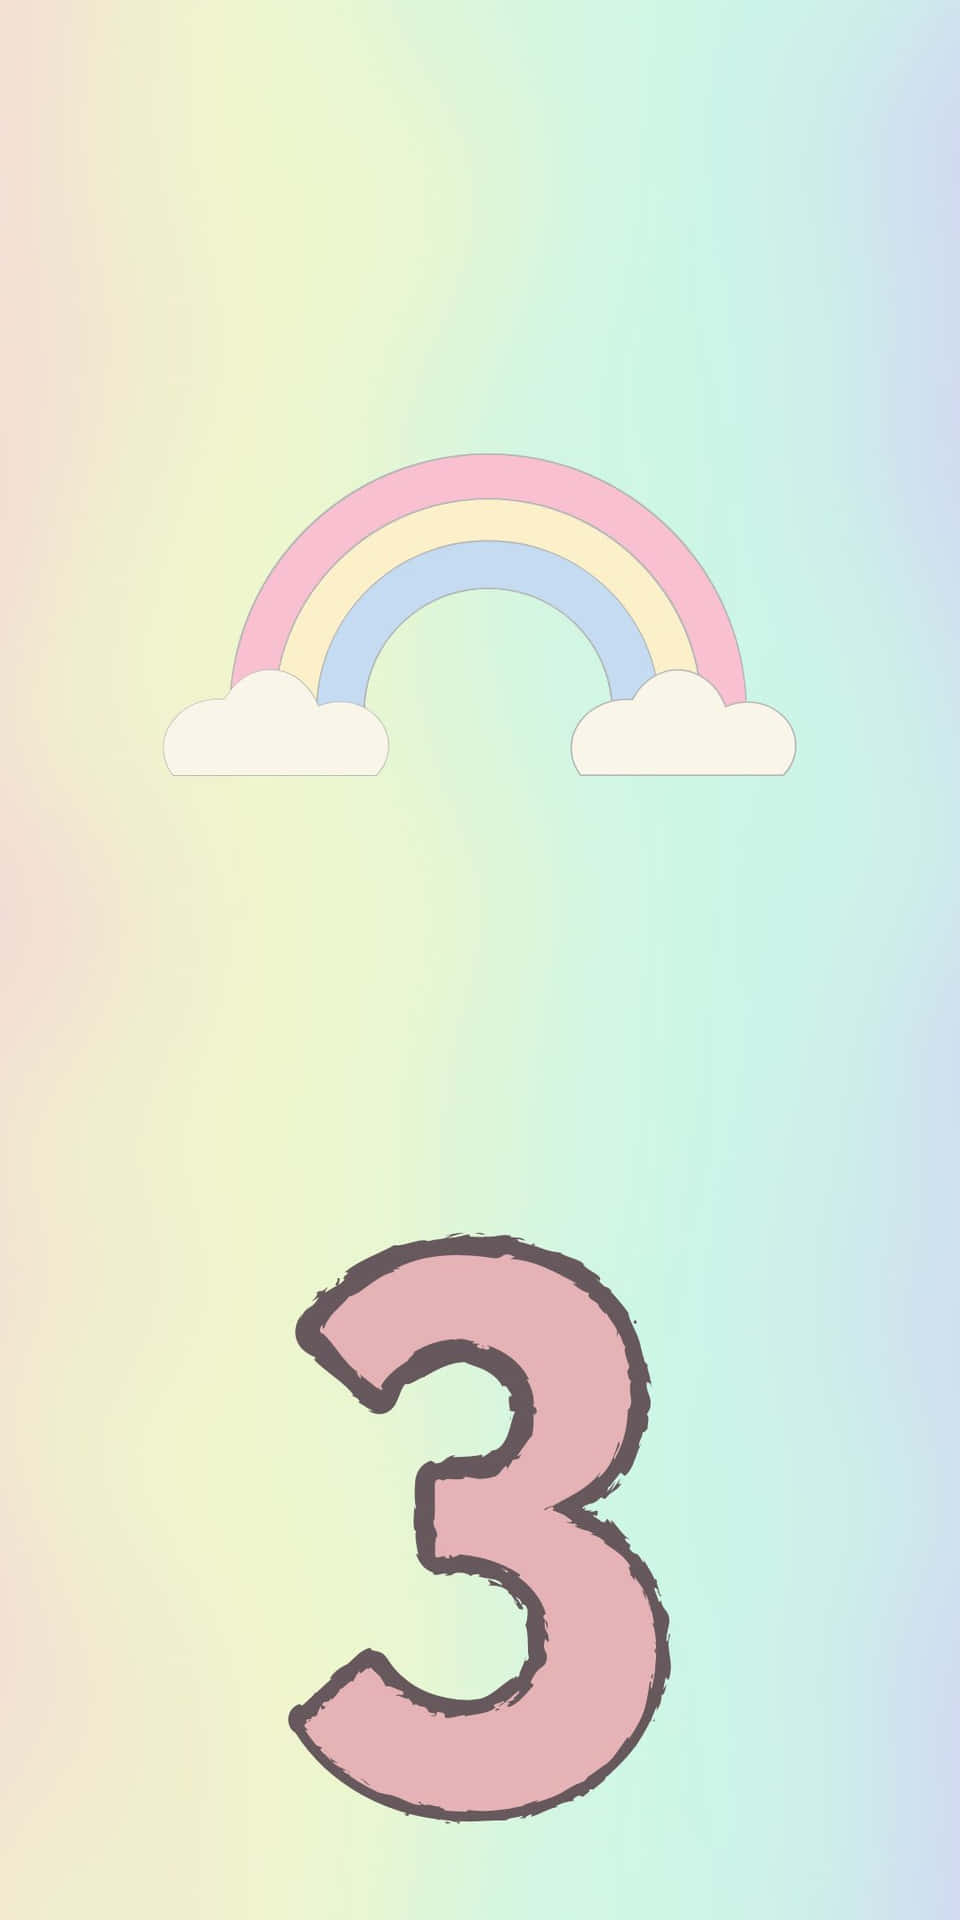 Baggrund Pixel 3 med søde regnbuekatter